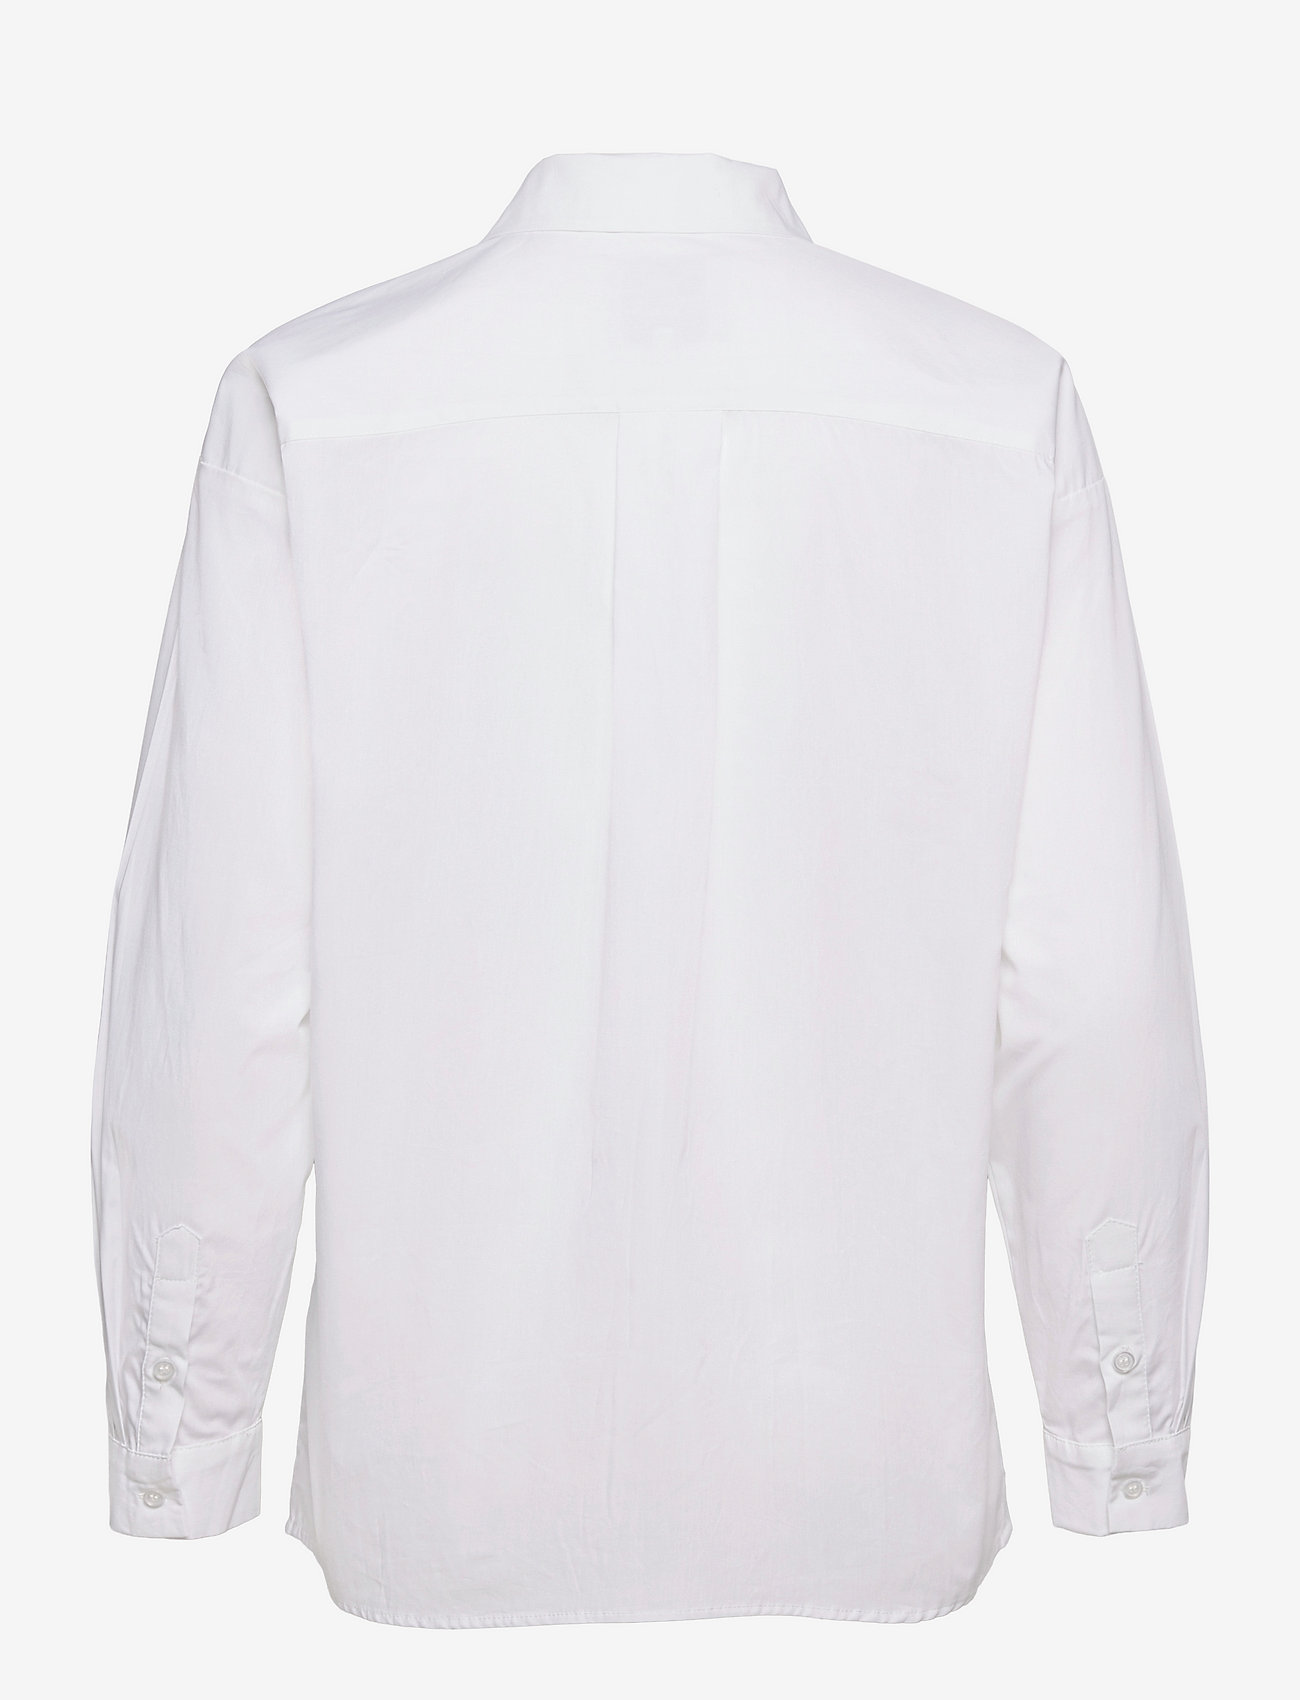 My Essential Wardrobe - 03 THE SHIRT - marškiniai ilgomis rankovėmis - bright white - 1